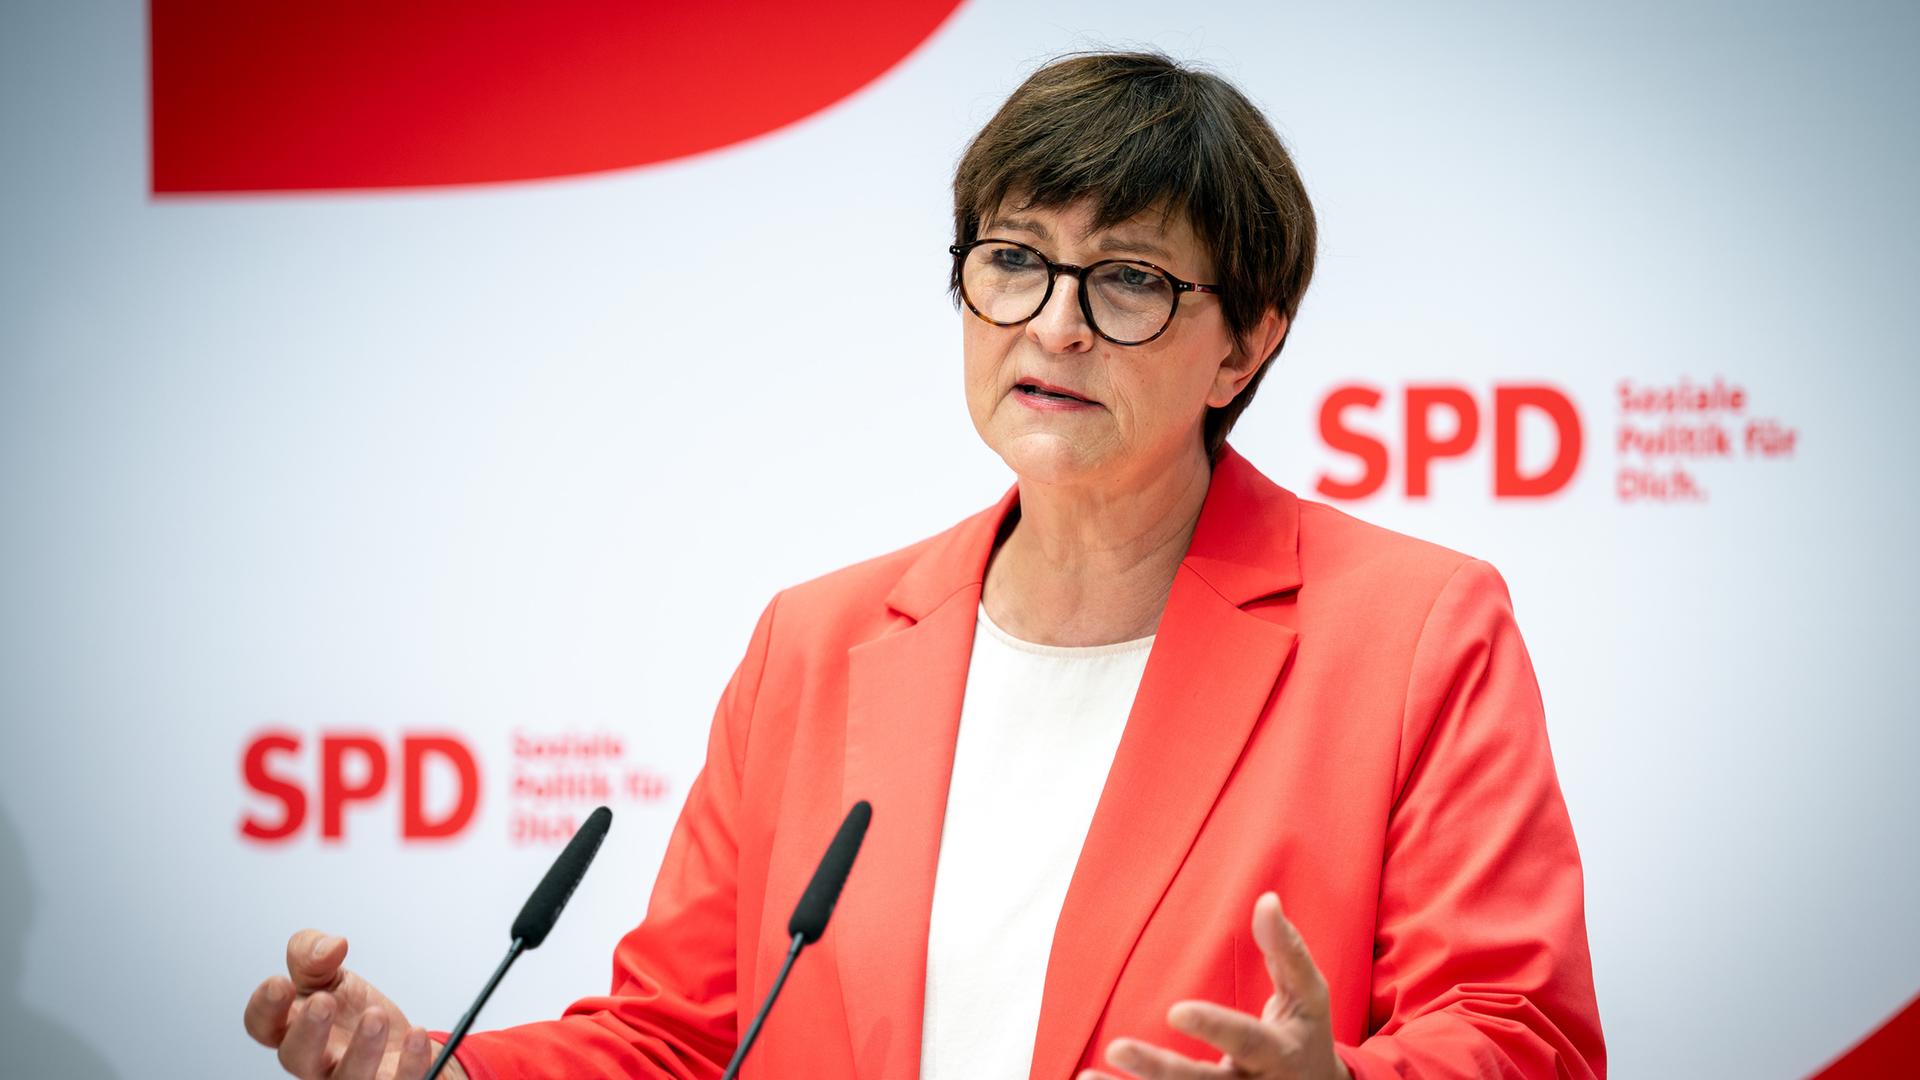 SPD-Parteivorsitzende Saskia Esken spricht an einem Rednerpult.